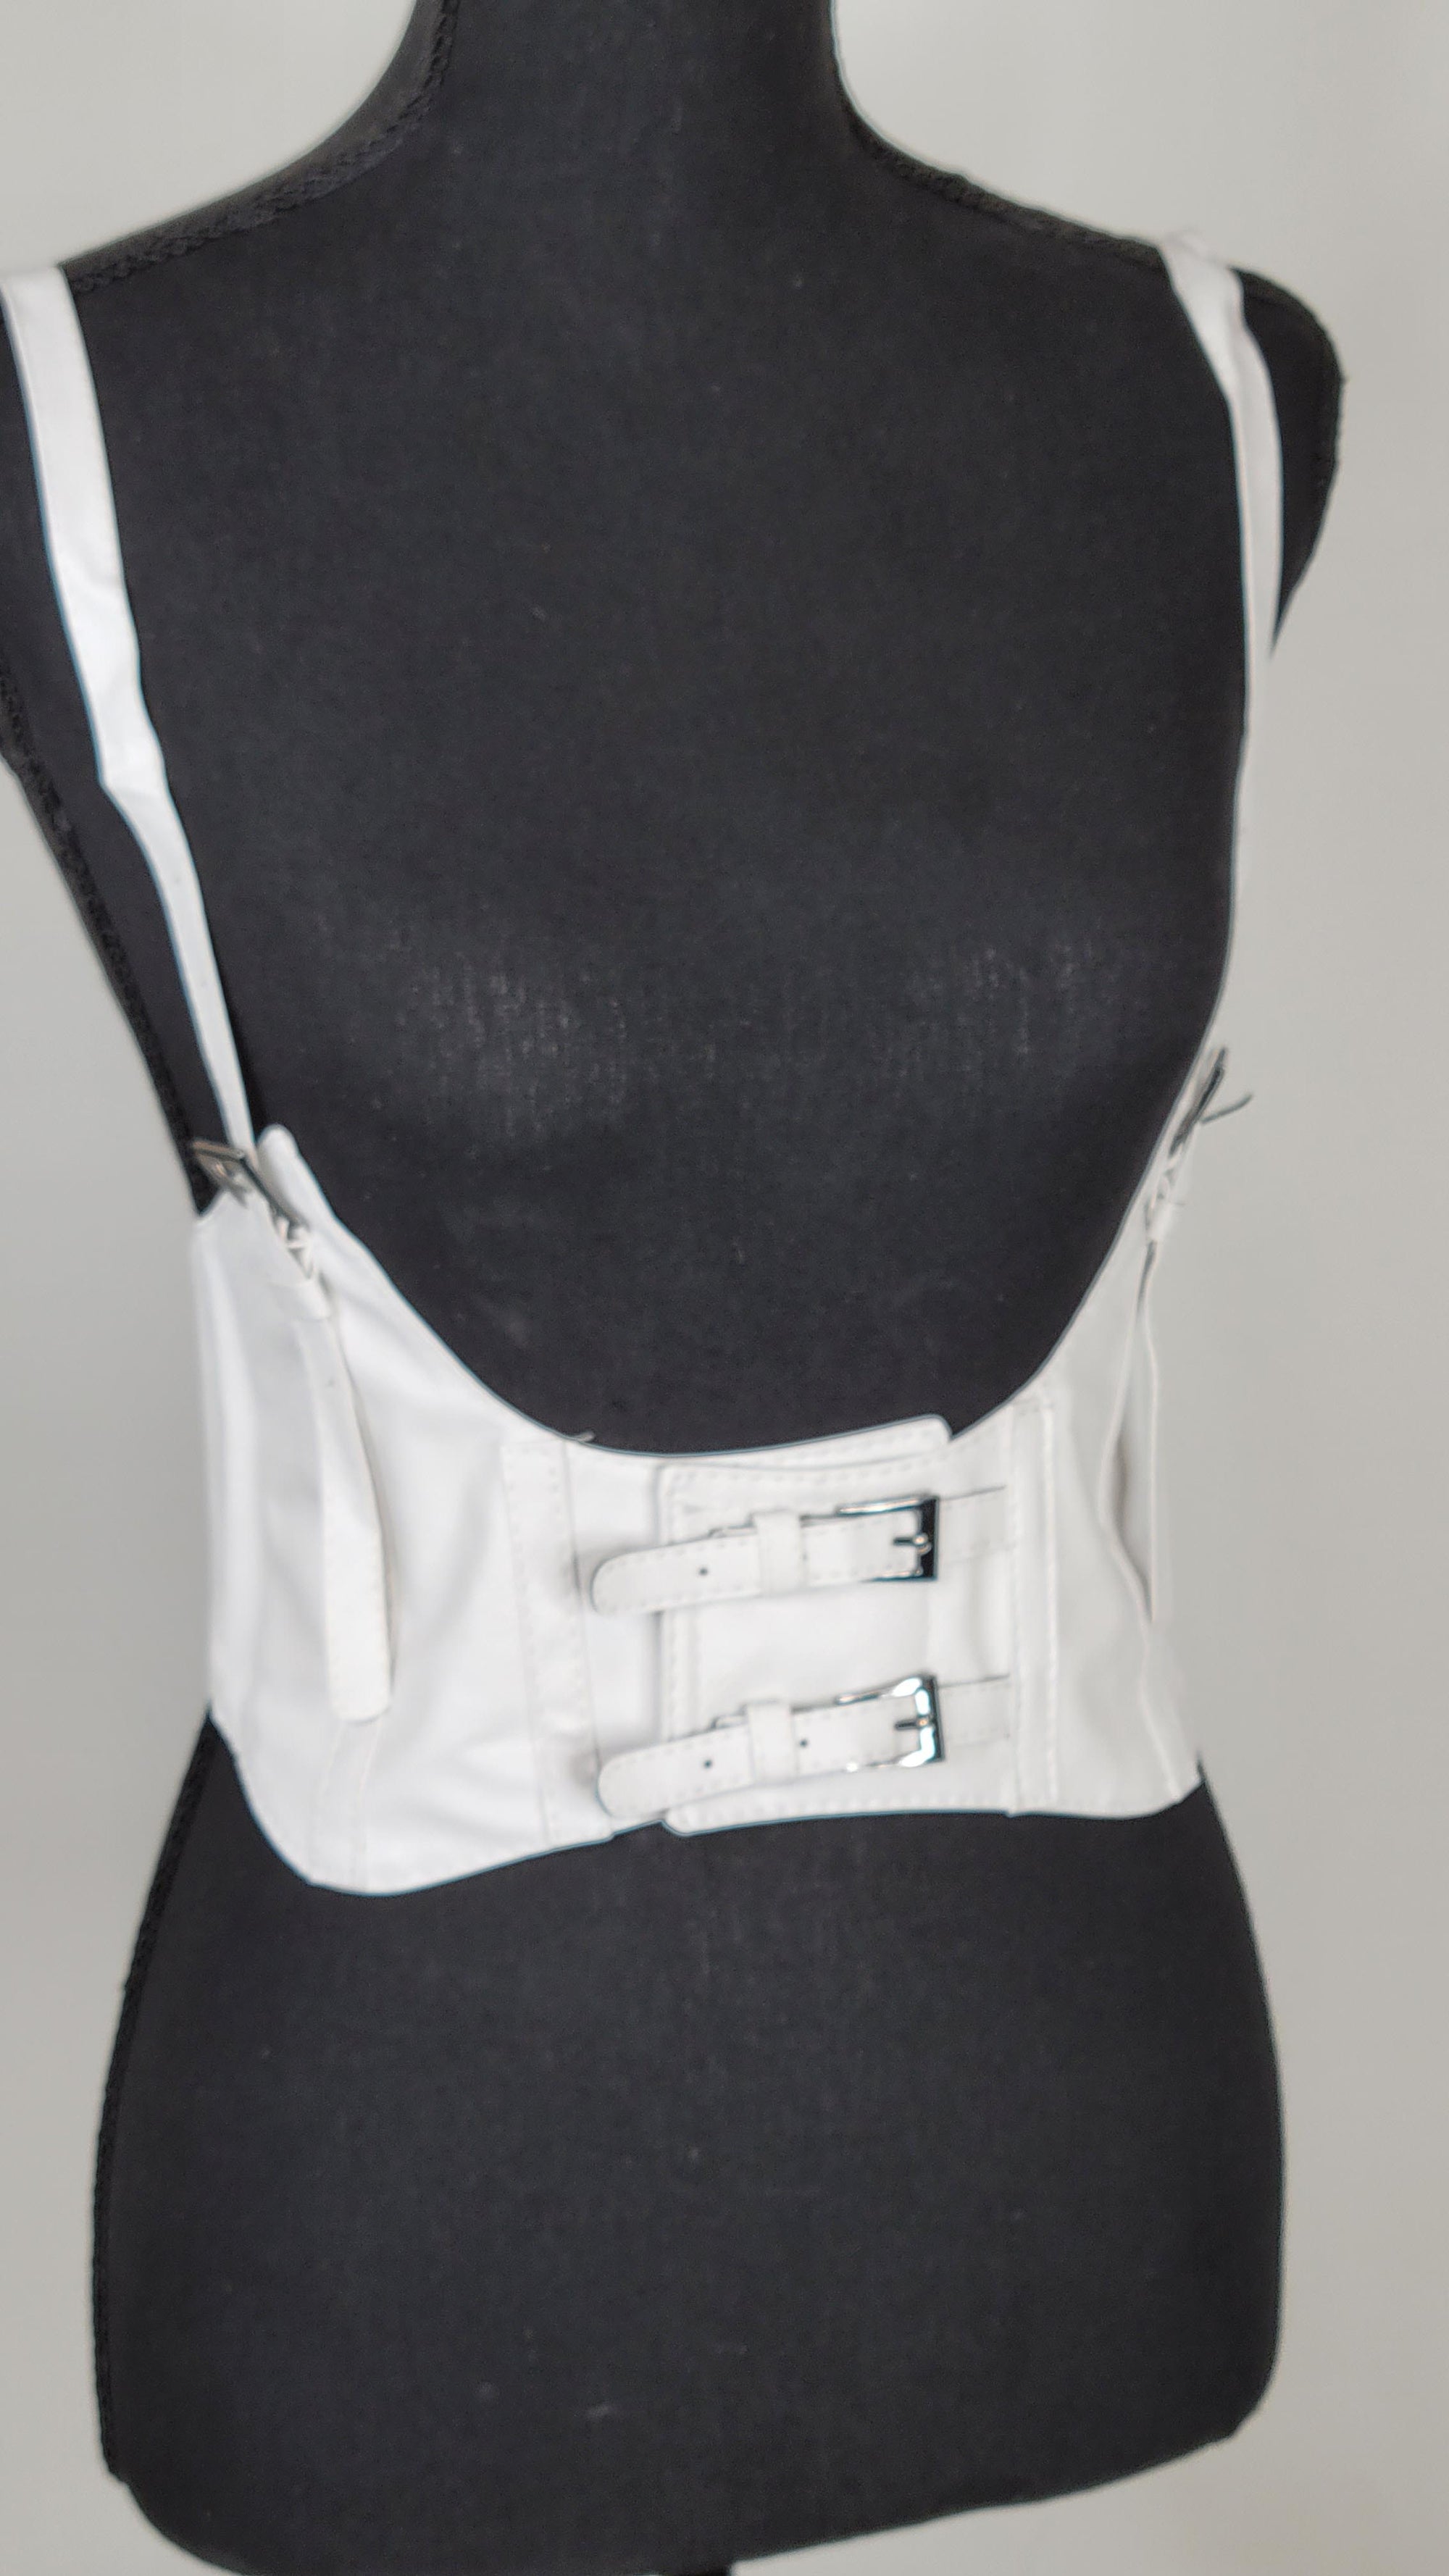 6 x Steel Suspender Clips in Ivory – Bunny Corset